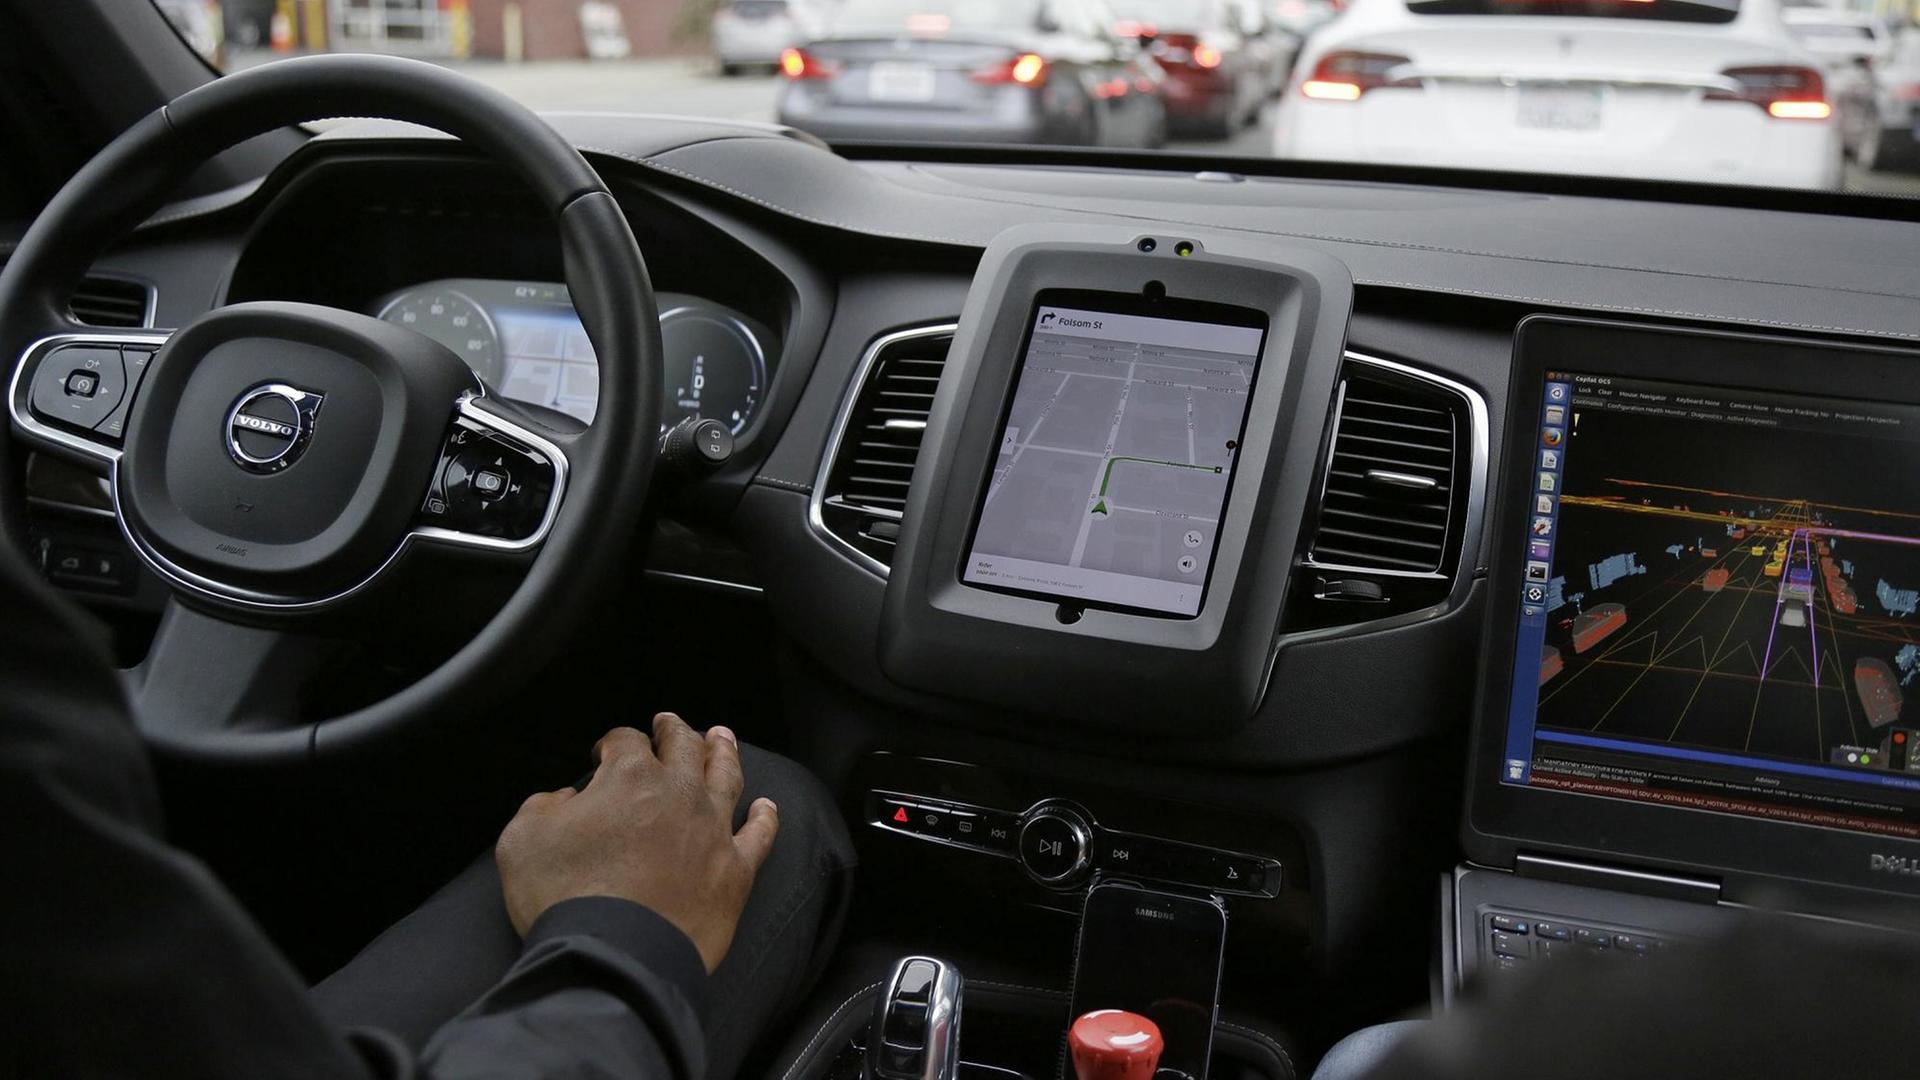 Das Bild zeigt ein selbstfahrendes Auto des Fahrdienst-Vermittlers Uber von innen, die Aufnahme stammt aus dem Jahr 2016.